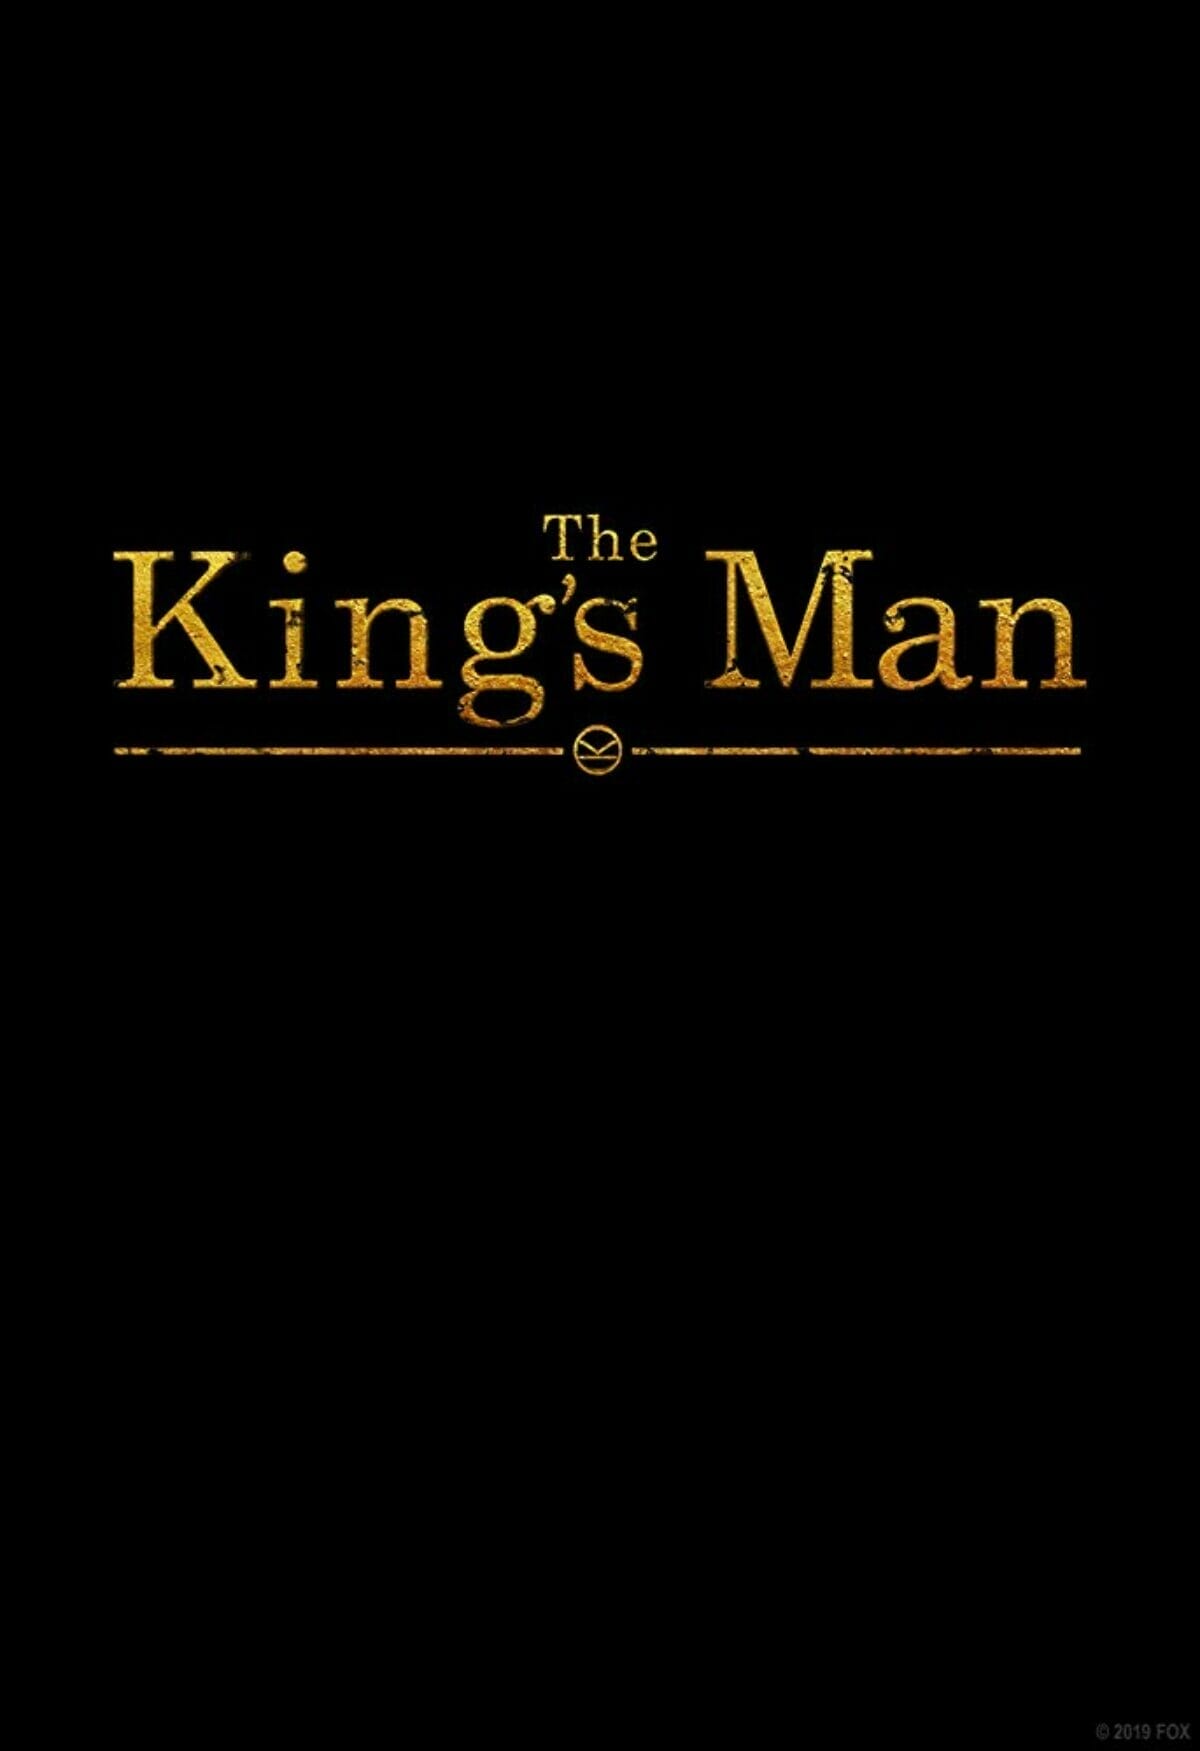 The-King's-Man-logo